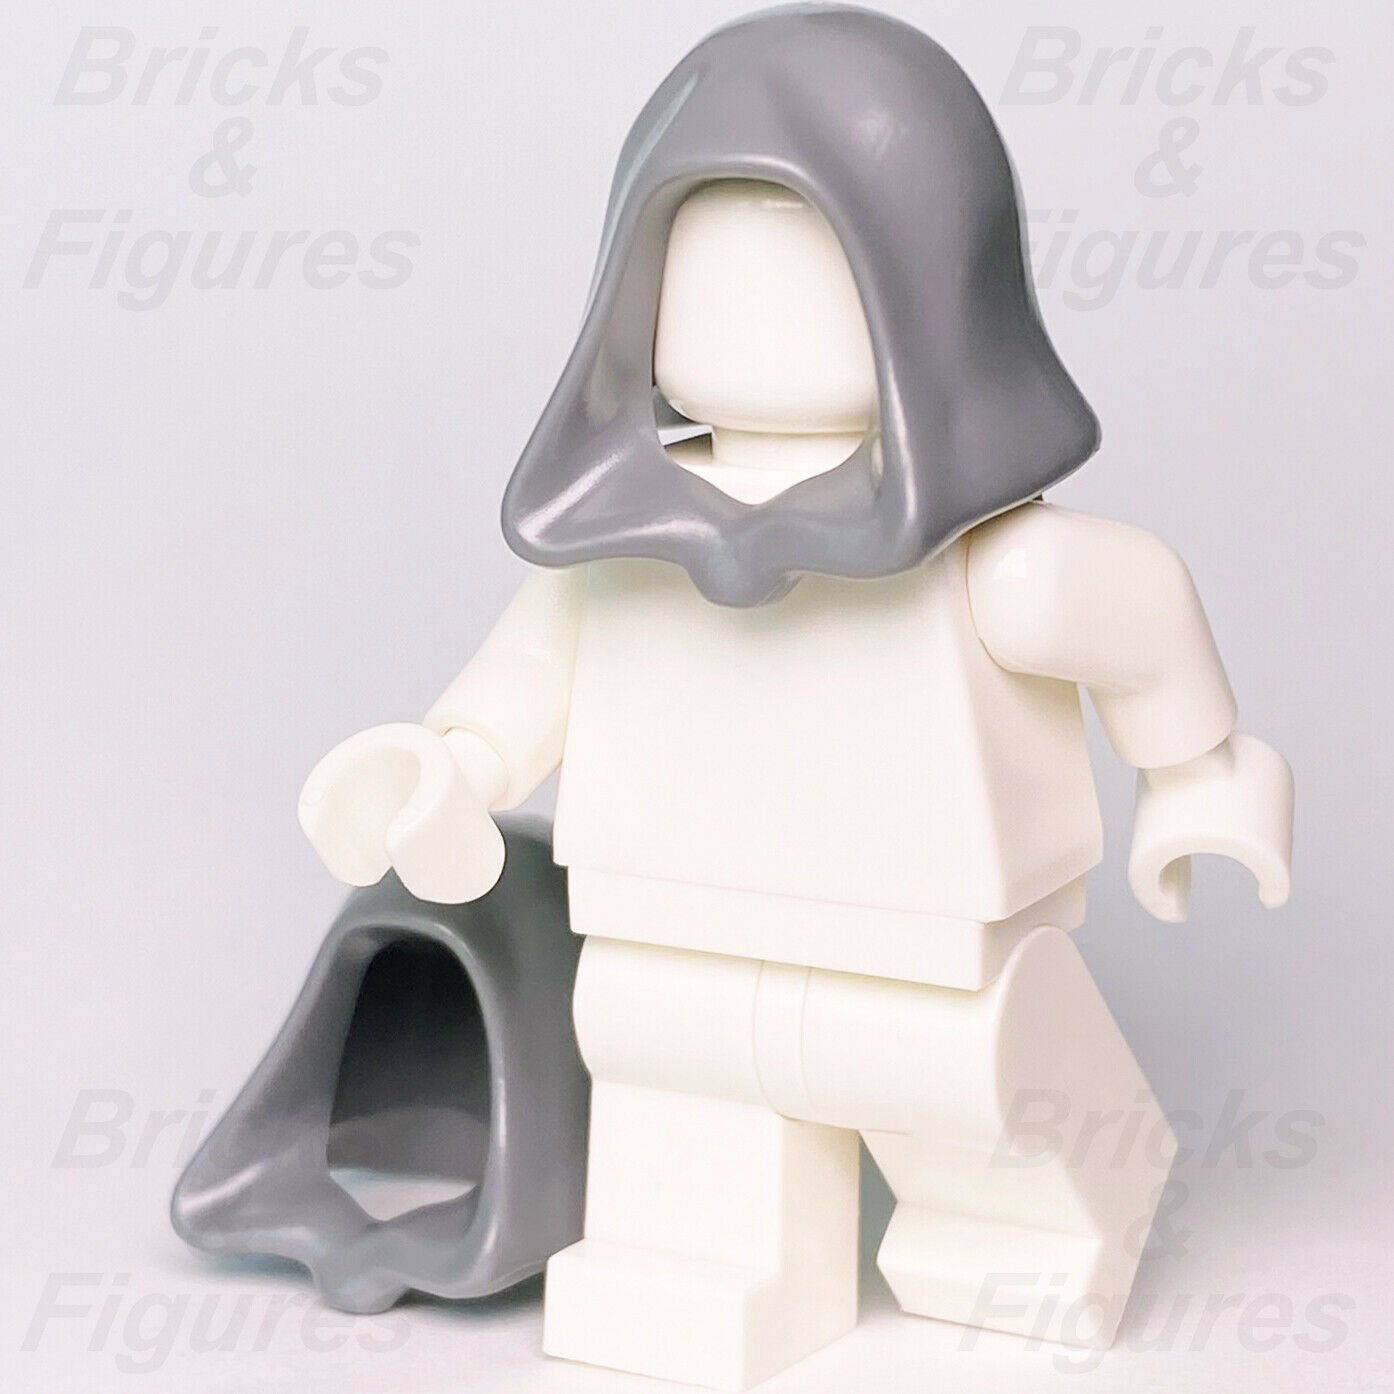 2 x Star Wars LEGO Dark Bluish Grey Robe Hoods Minifigure Headgear Parts 30381 - Bricks & Figures